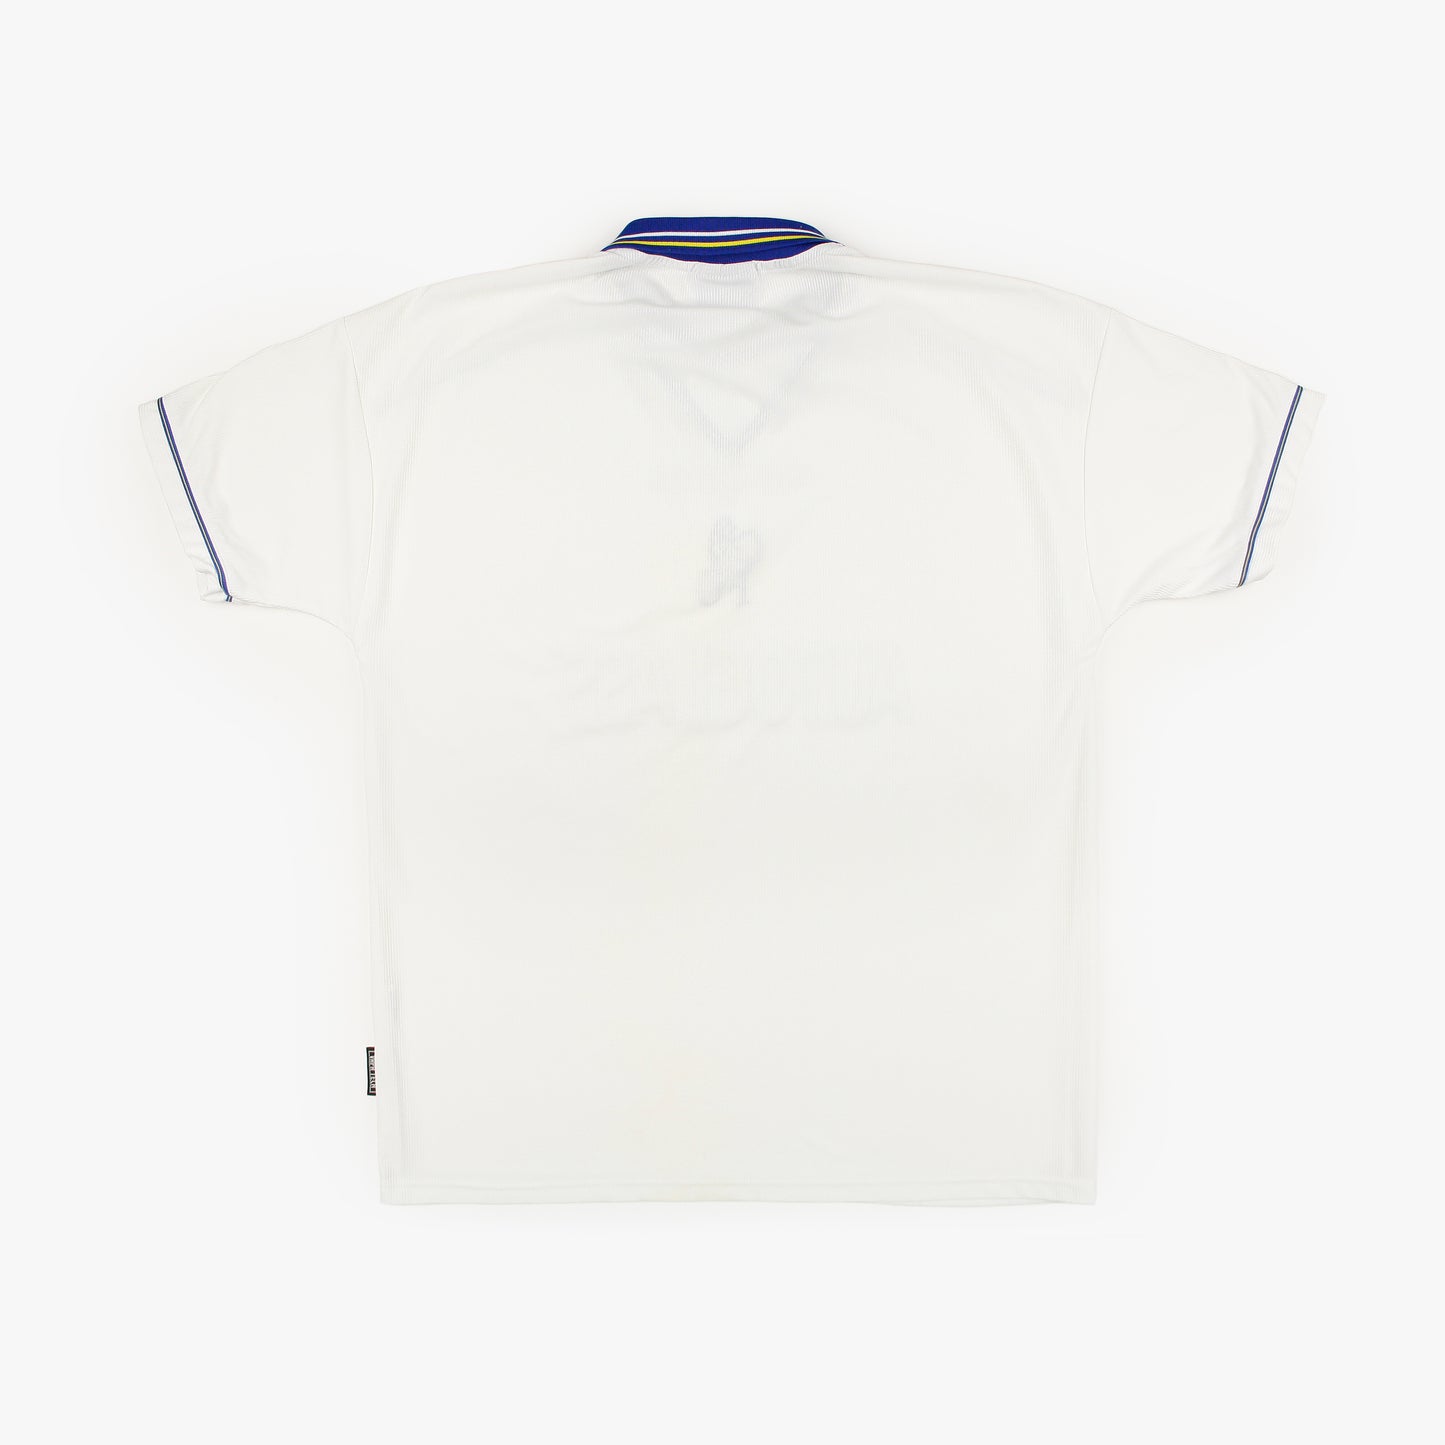 Chelsea 98/00 • Camiseta Visitante • XL